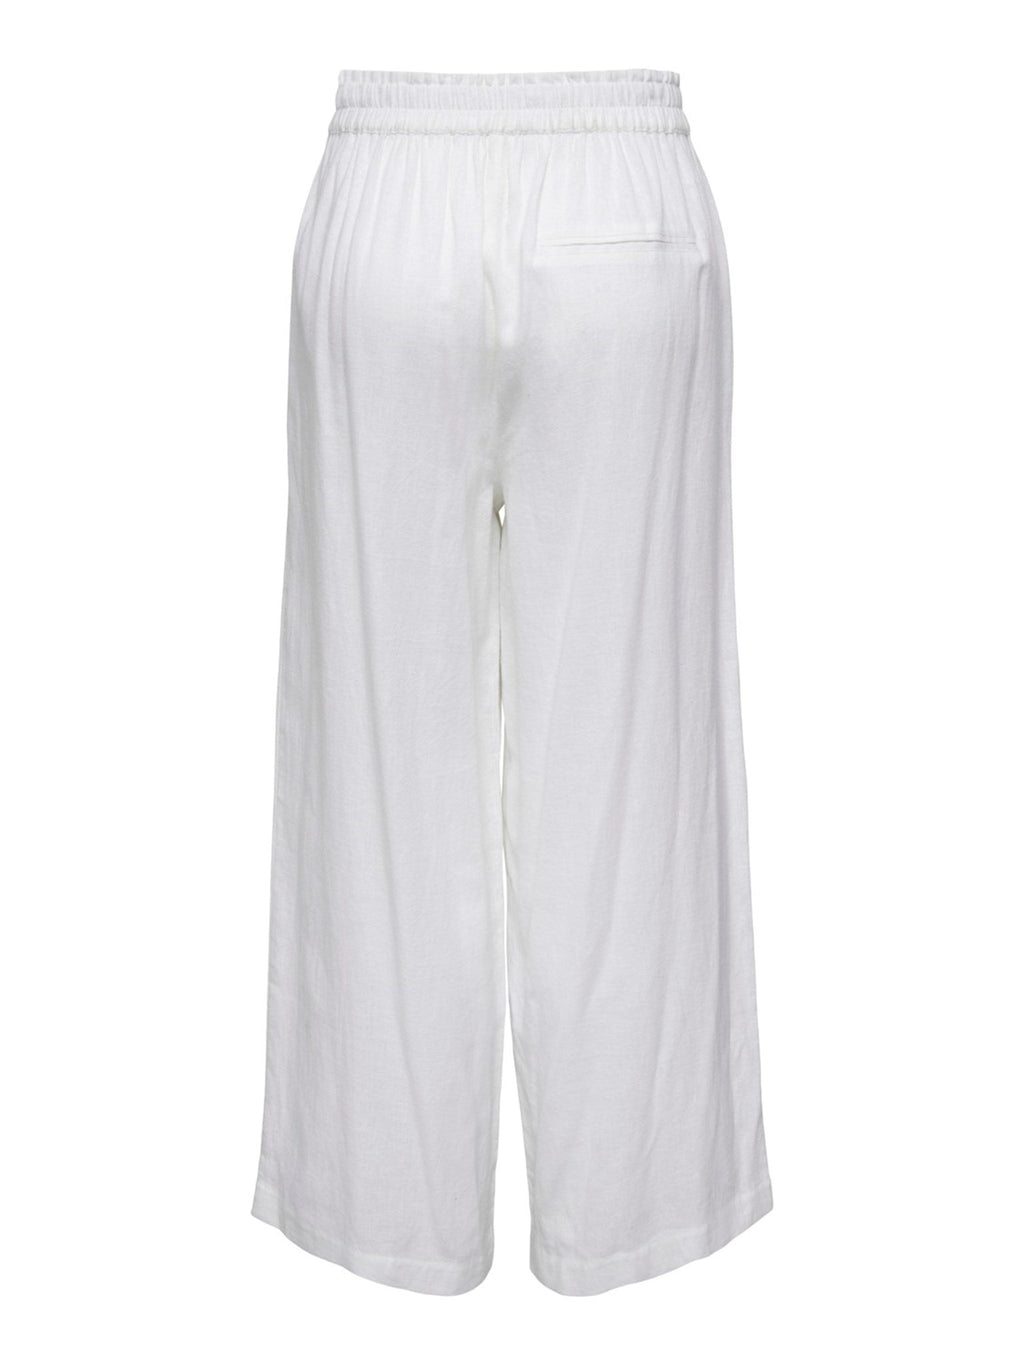 Pantalones de lino de Tokio - blanco brillante